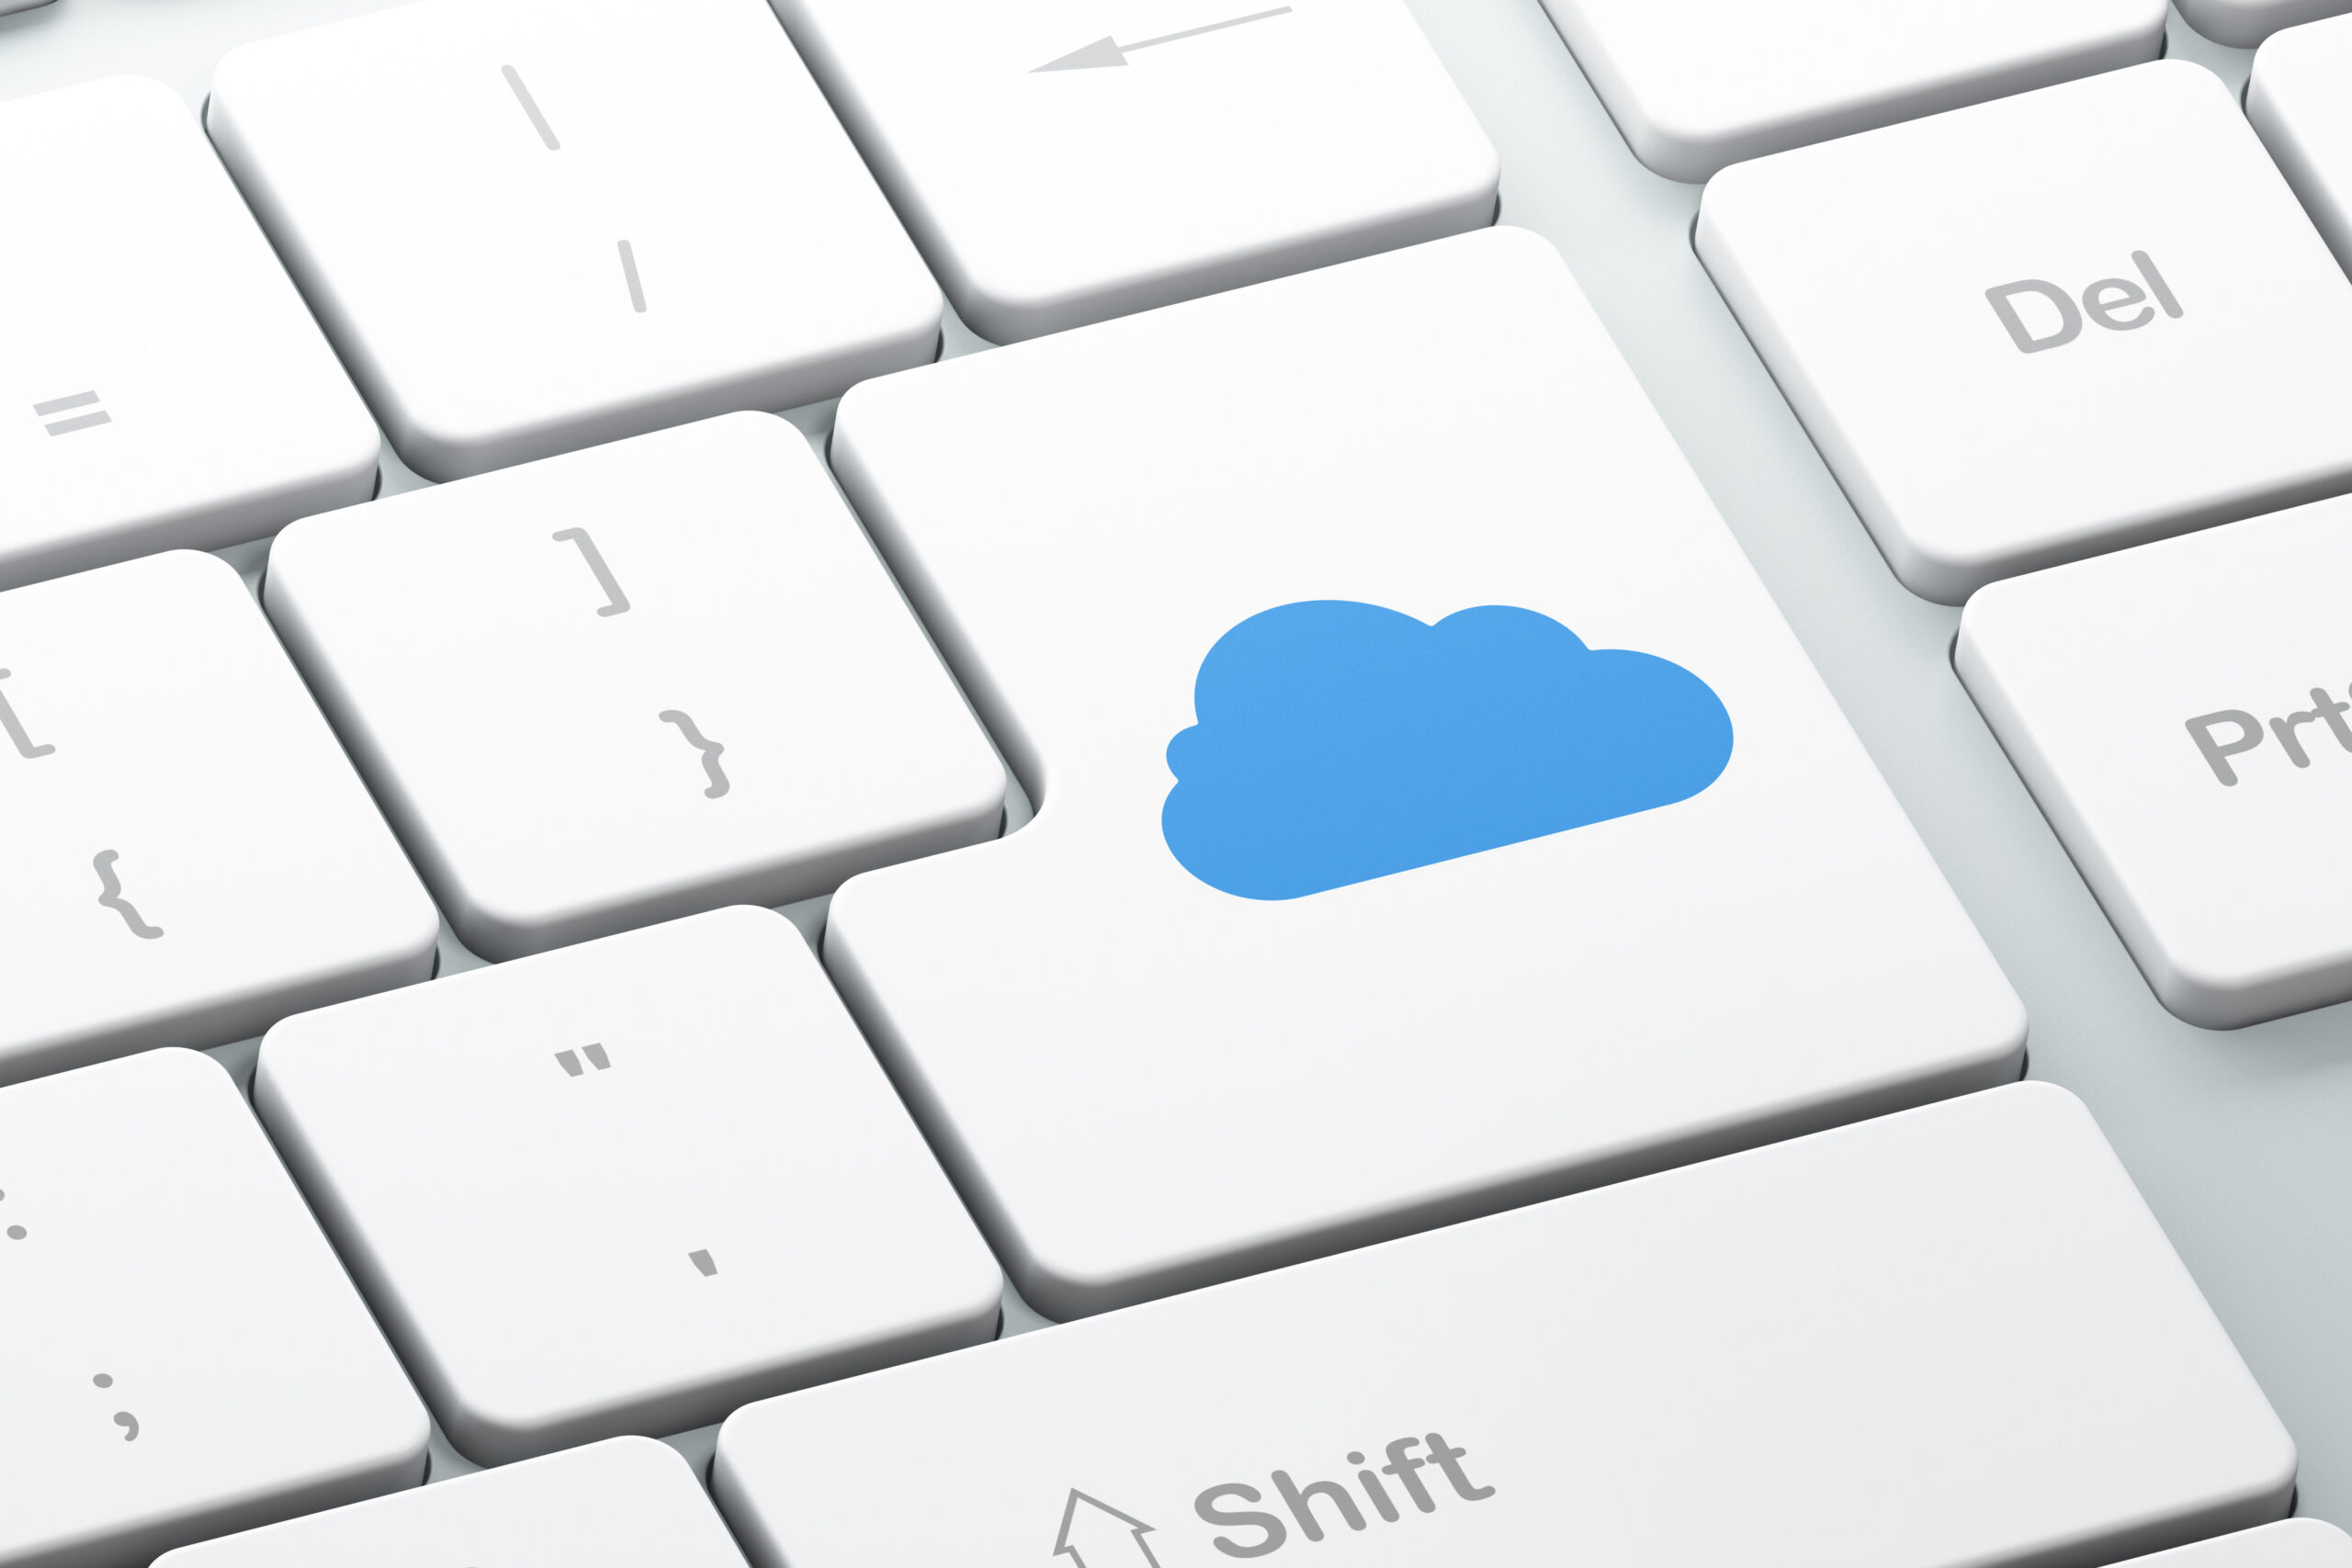 Composite-Bild einer Computer-Tastatur, die Enter-Taste mit einem Cloud-Symbol